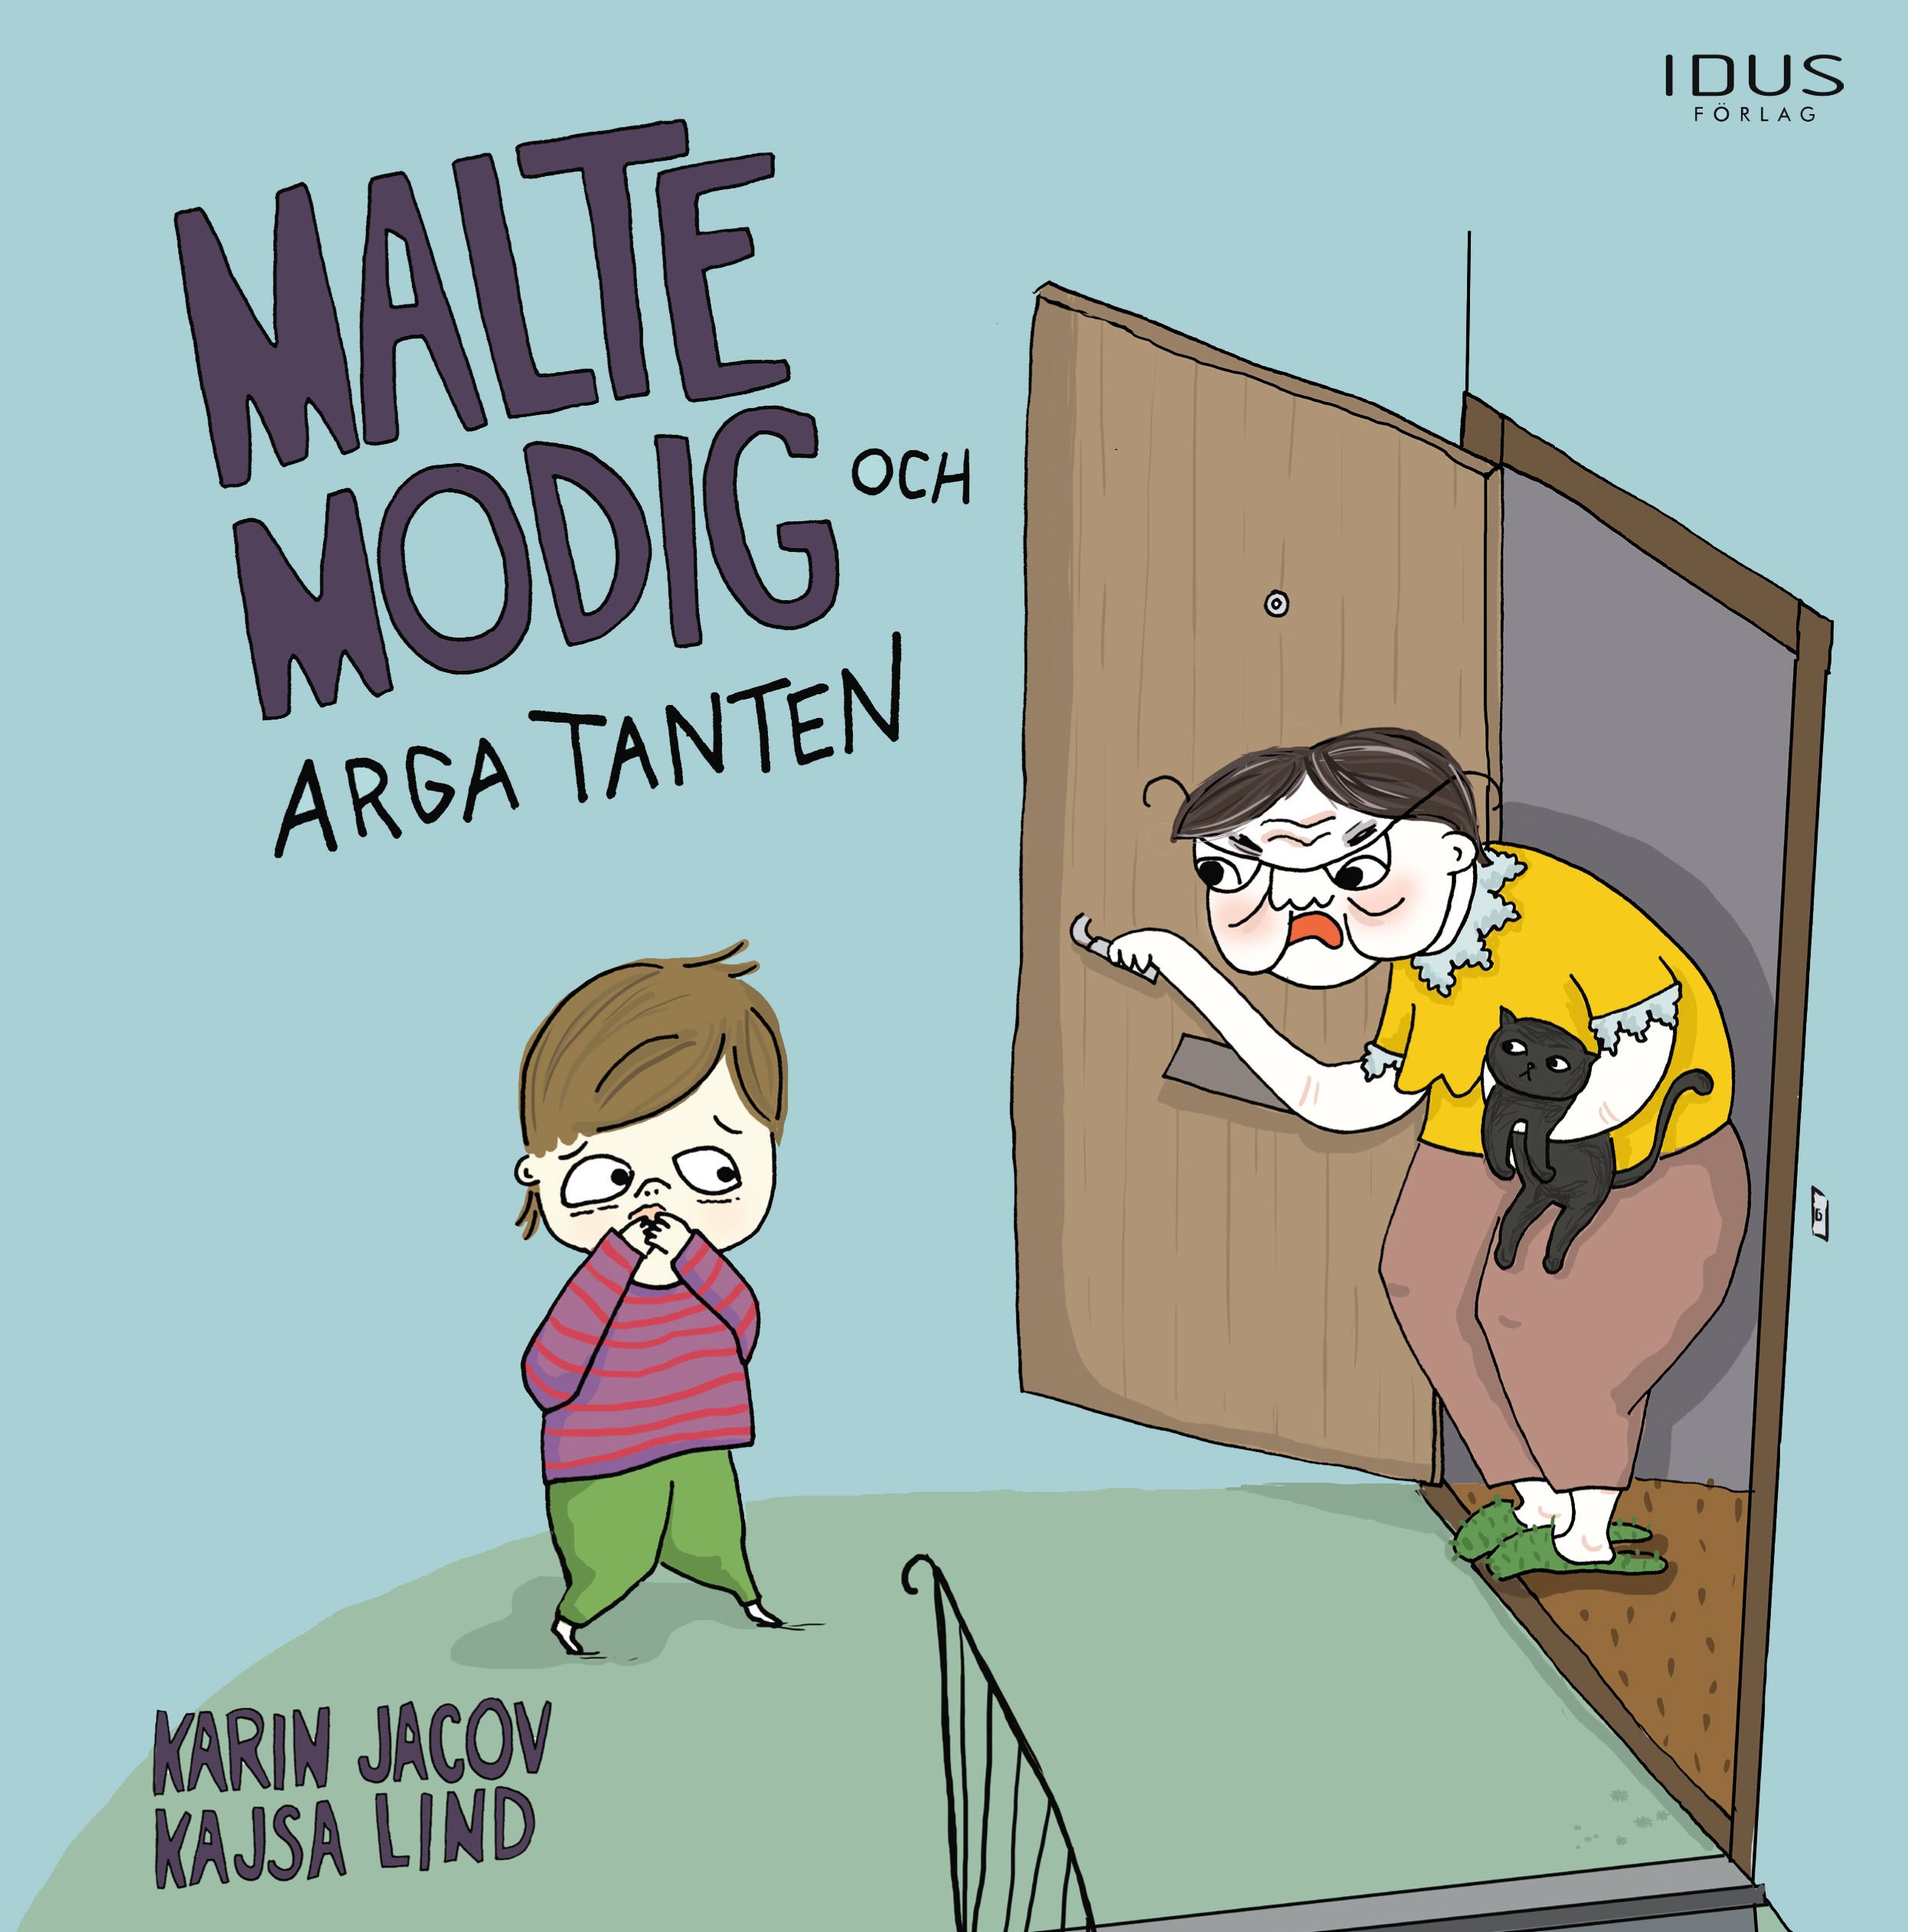 Malte Modig och arga tanten, e-bog af Karin Javoc